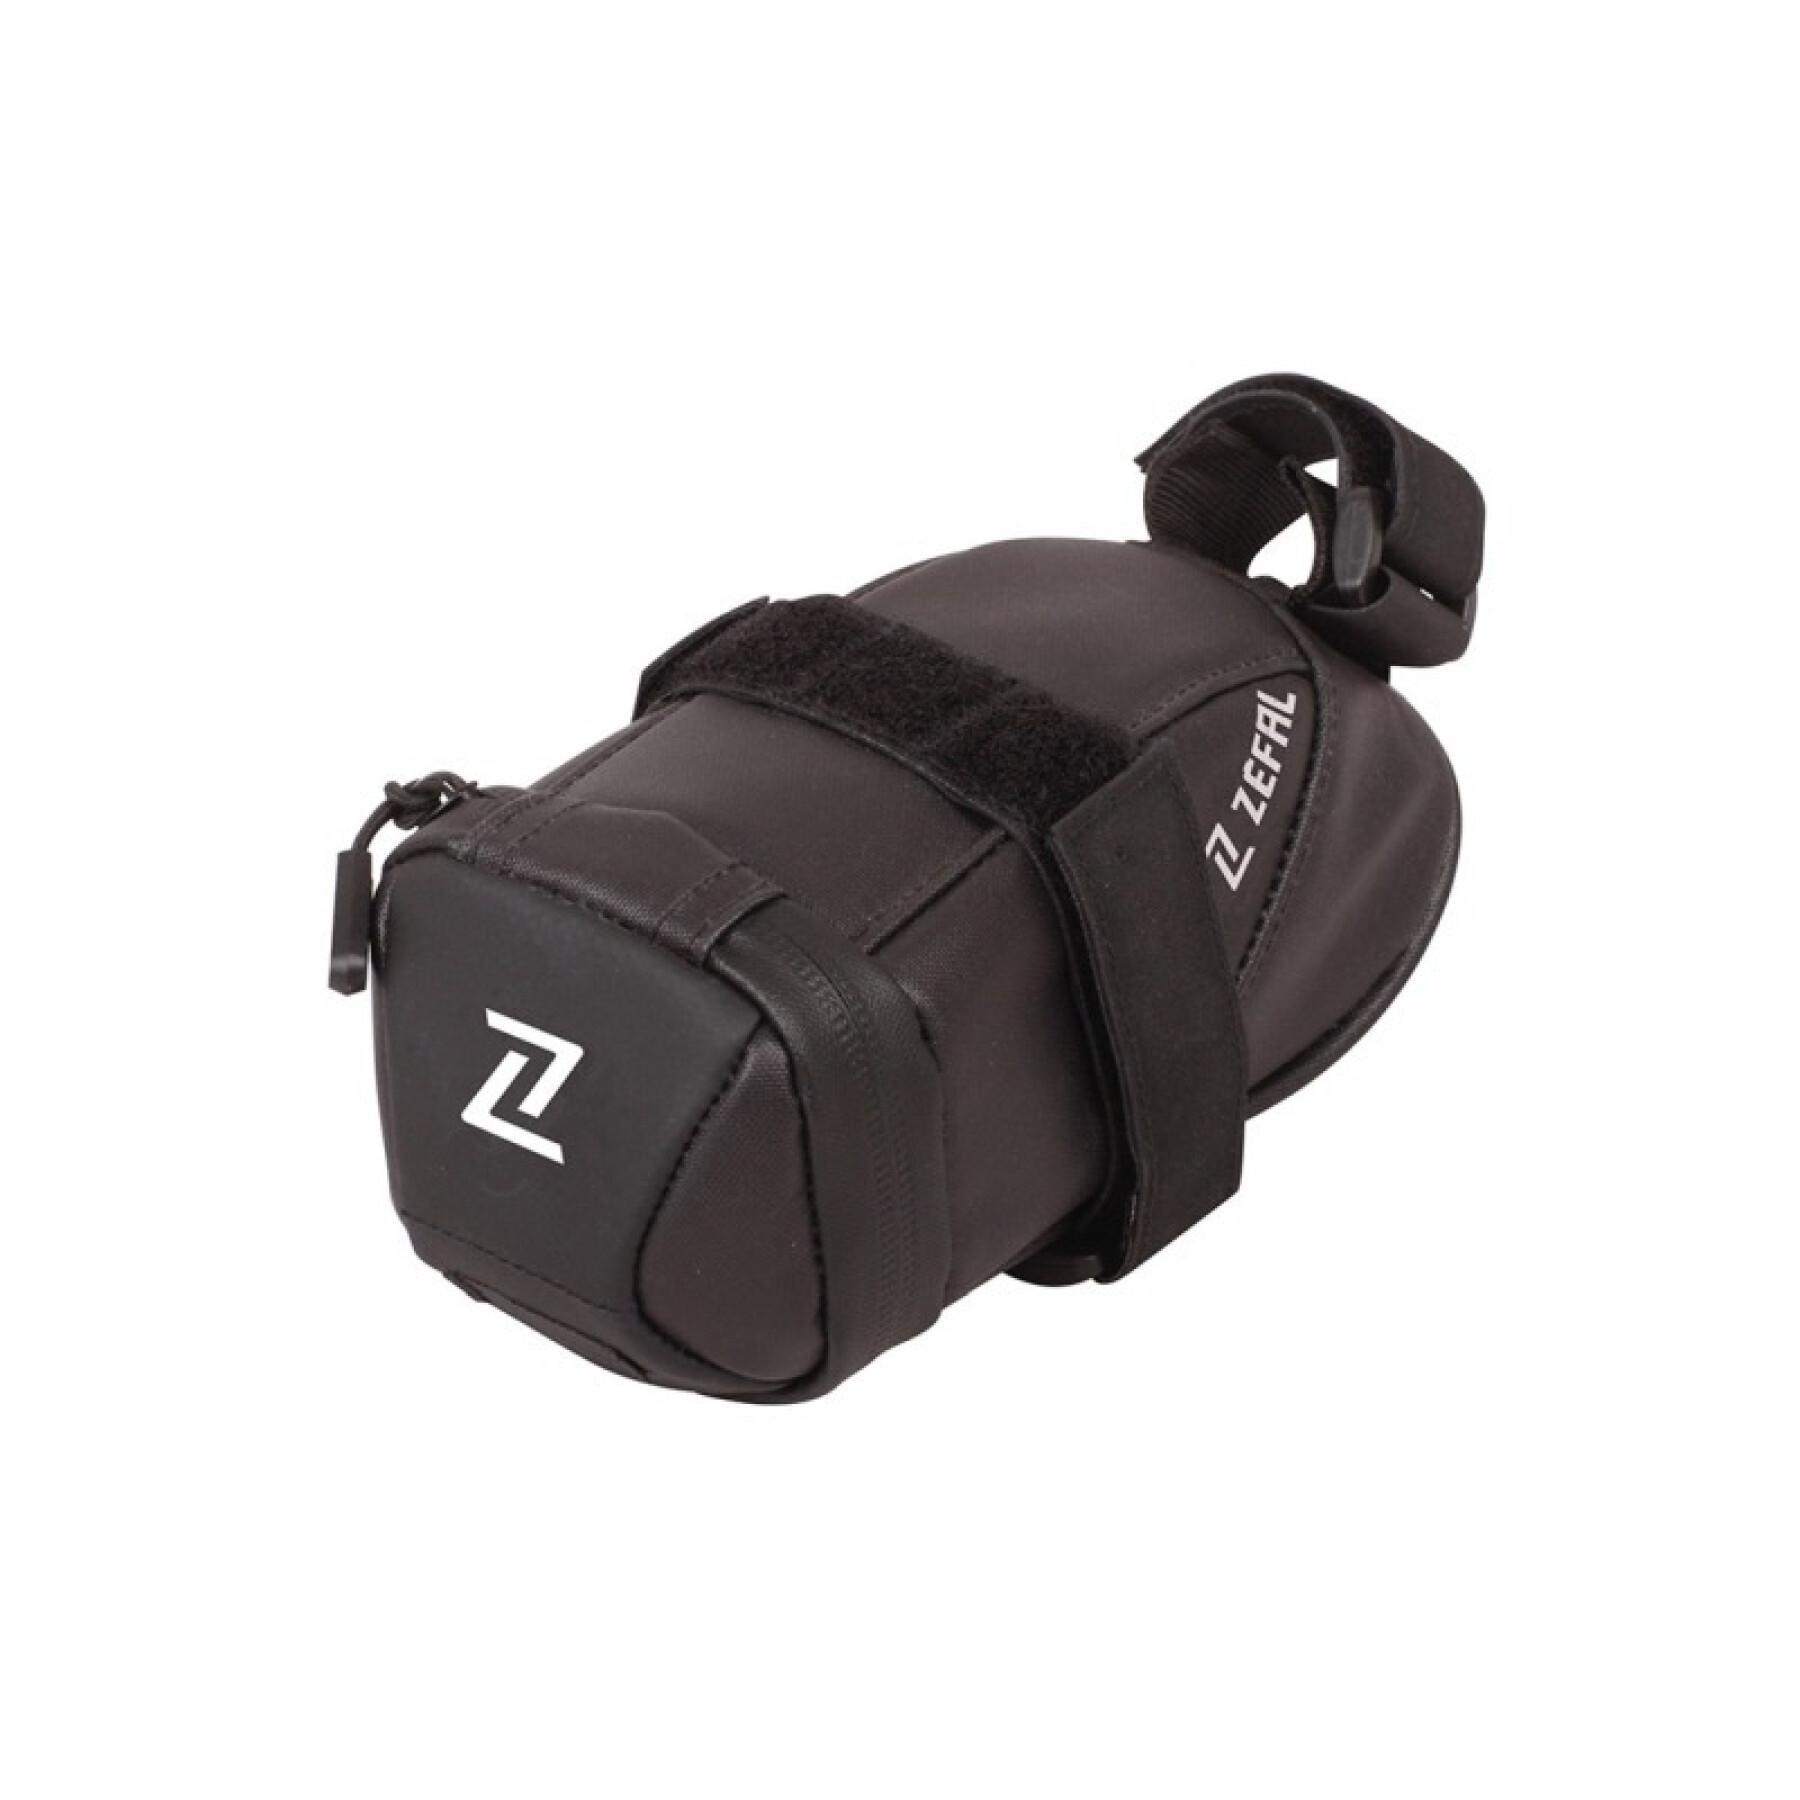 Sattelstützentasche Zefal Iron pack 2 s-ds